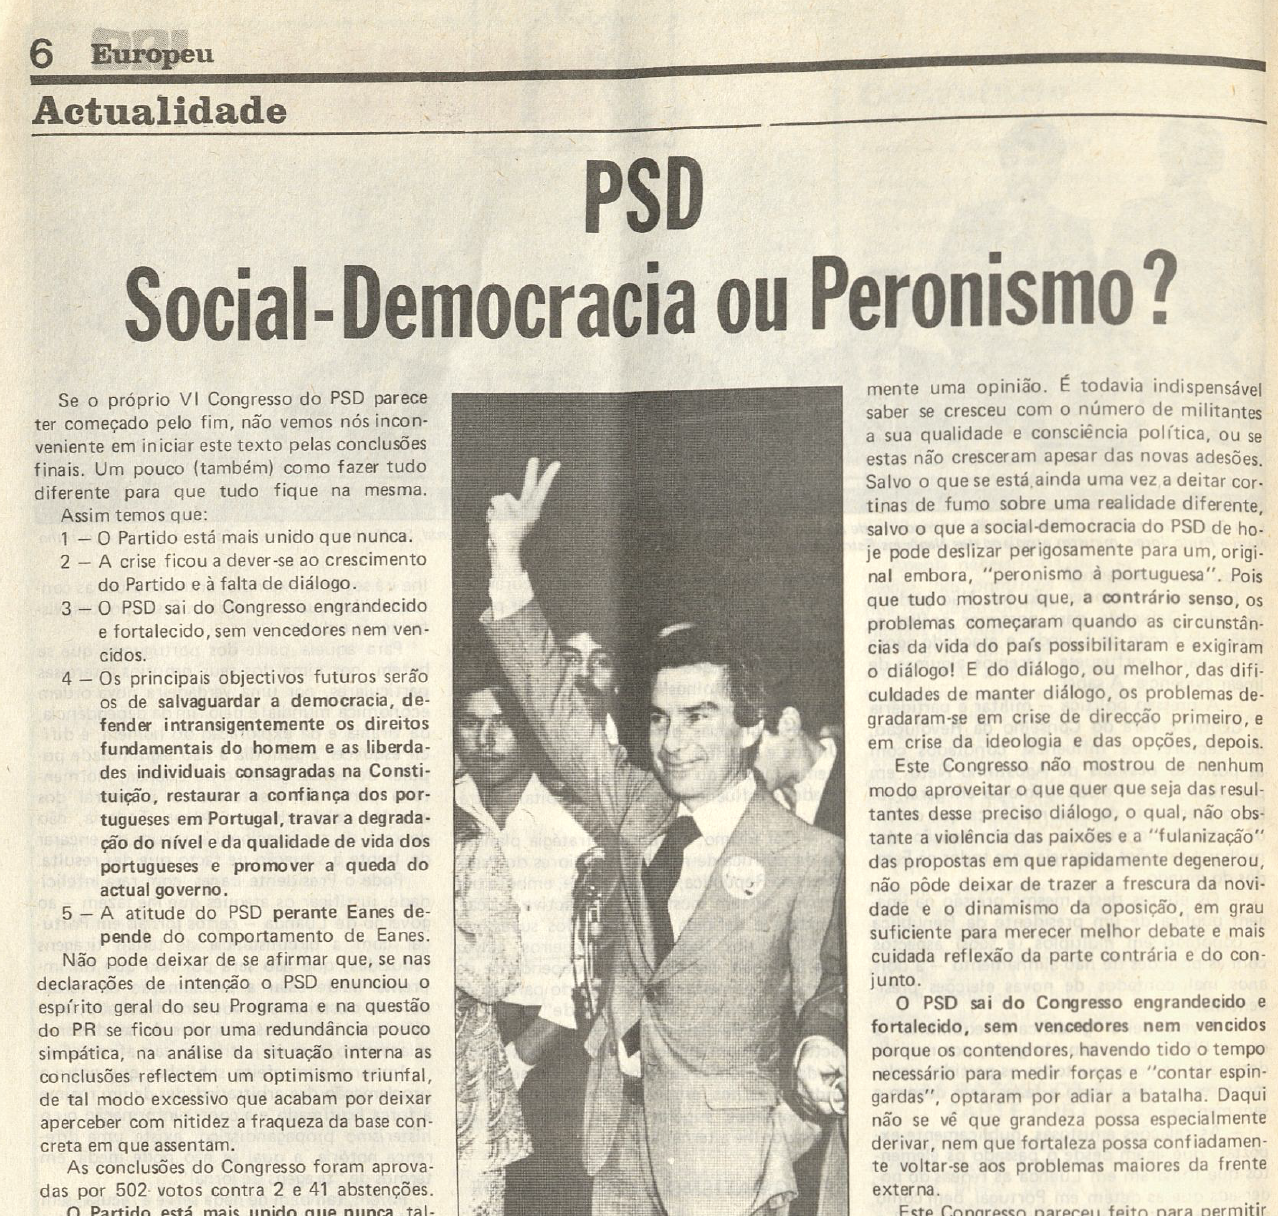 "PSD - Social Democracia ou Peronismo?"